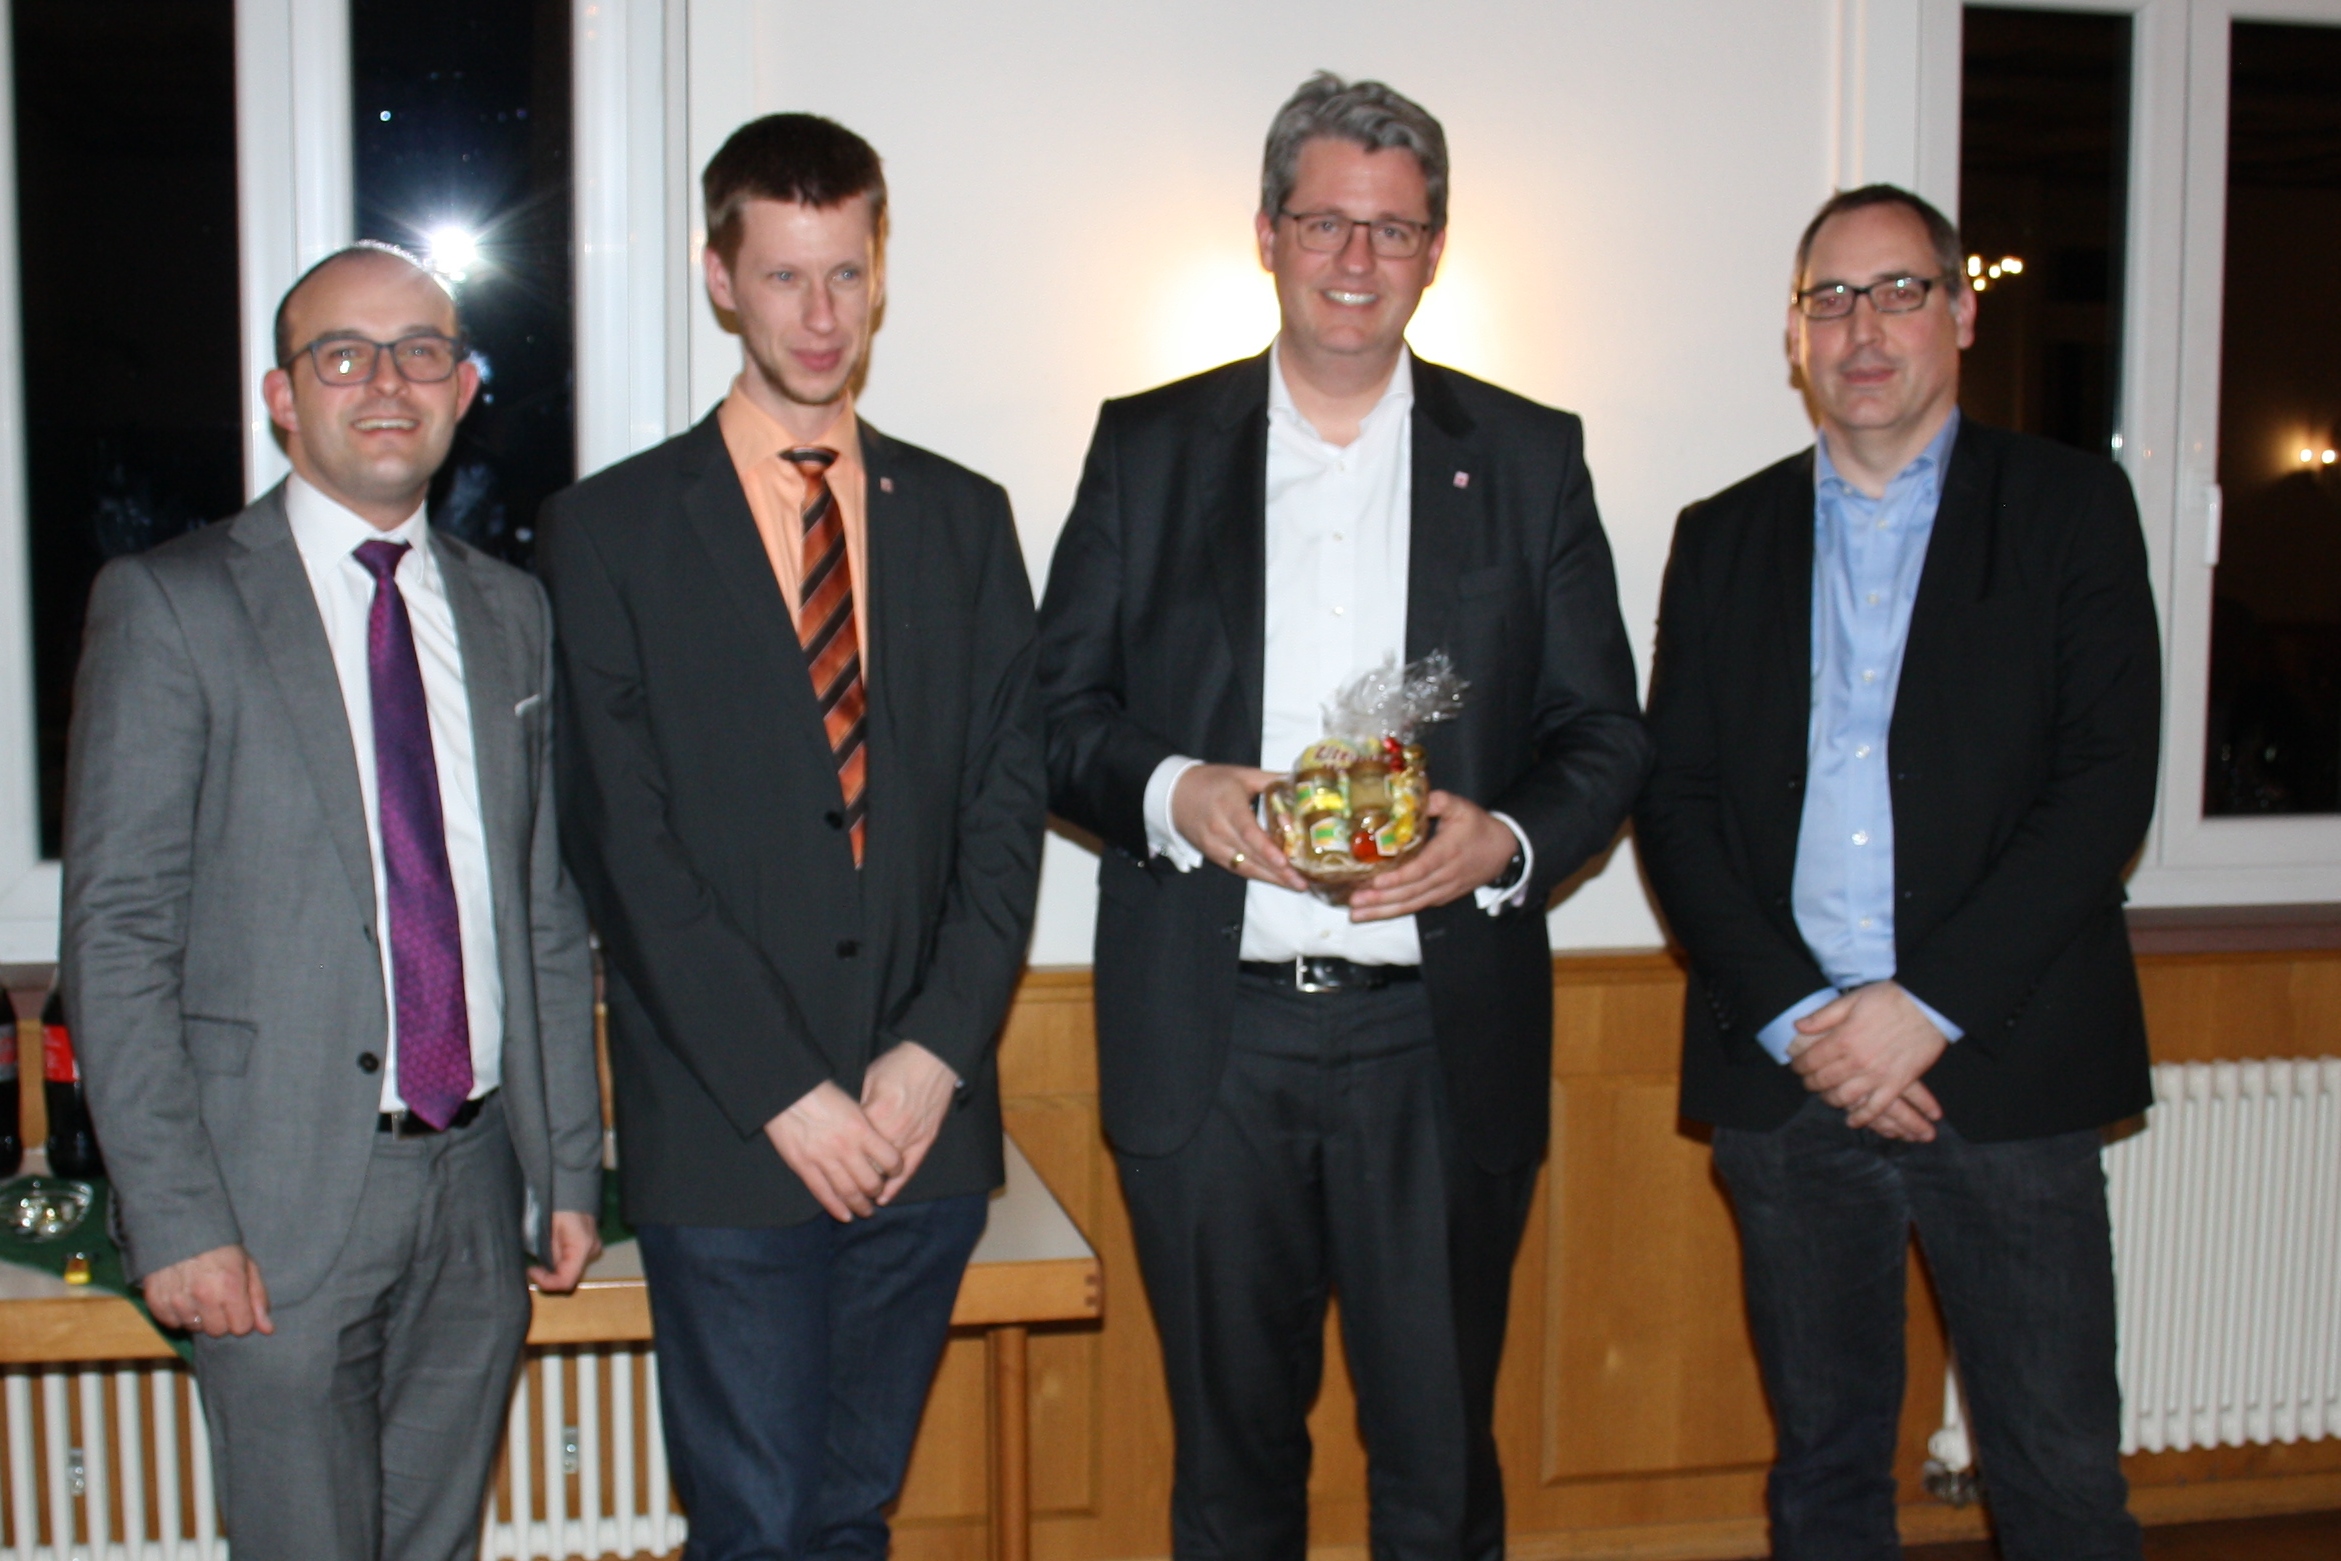 Lutz Khler, Timo Wesp, Patrick Burghardt, Alexander Reinfeldt (von links nach rechts)